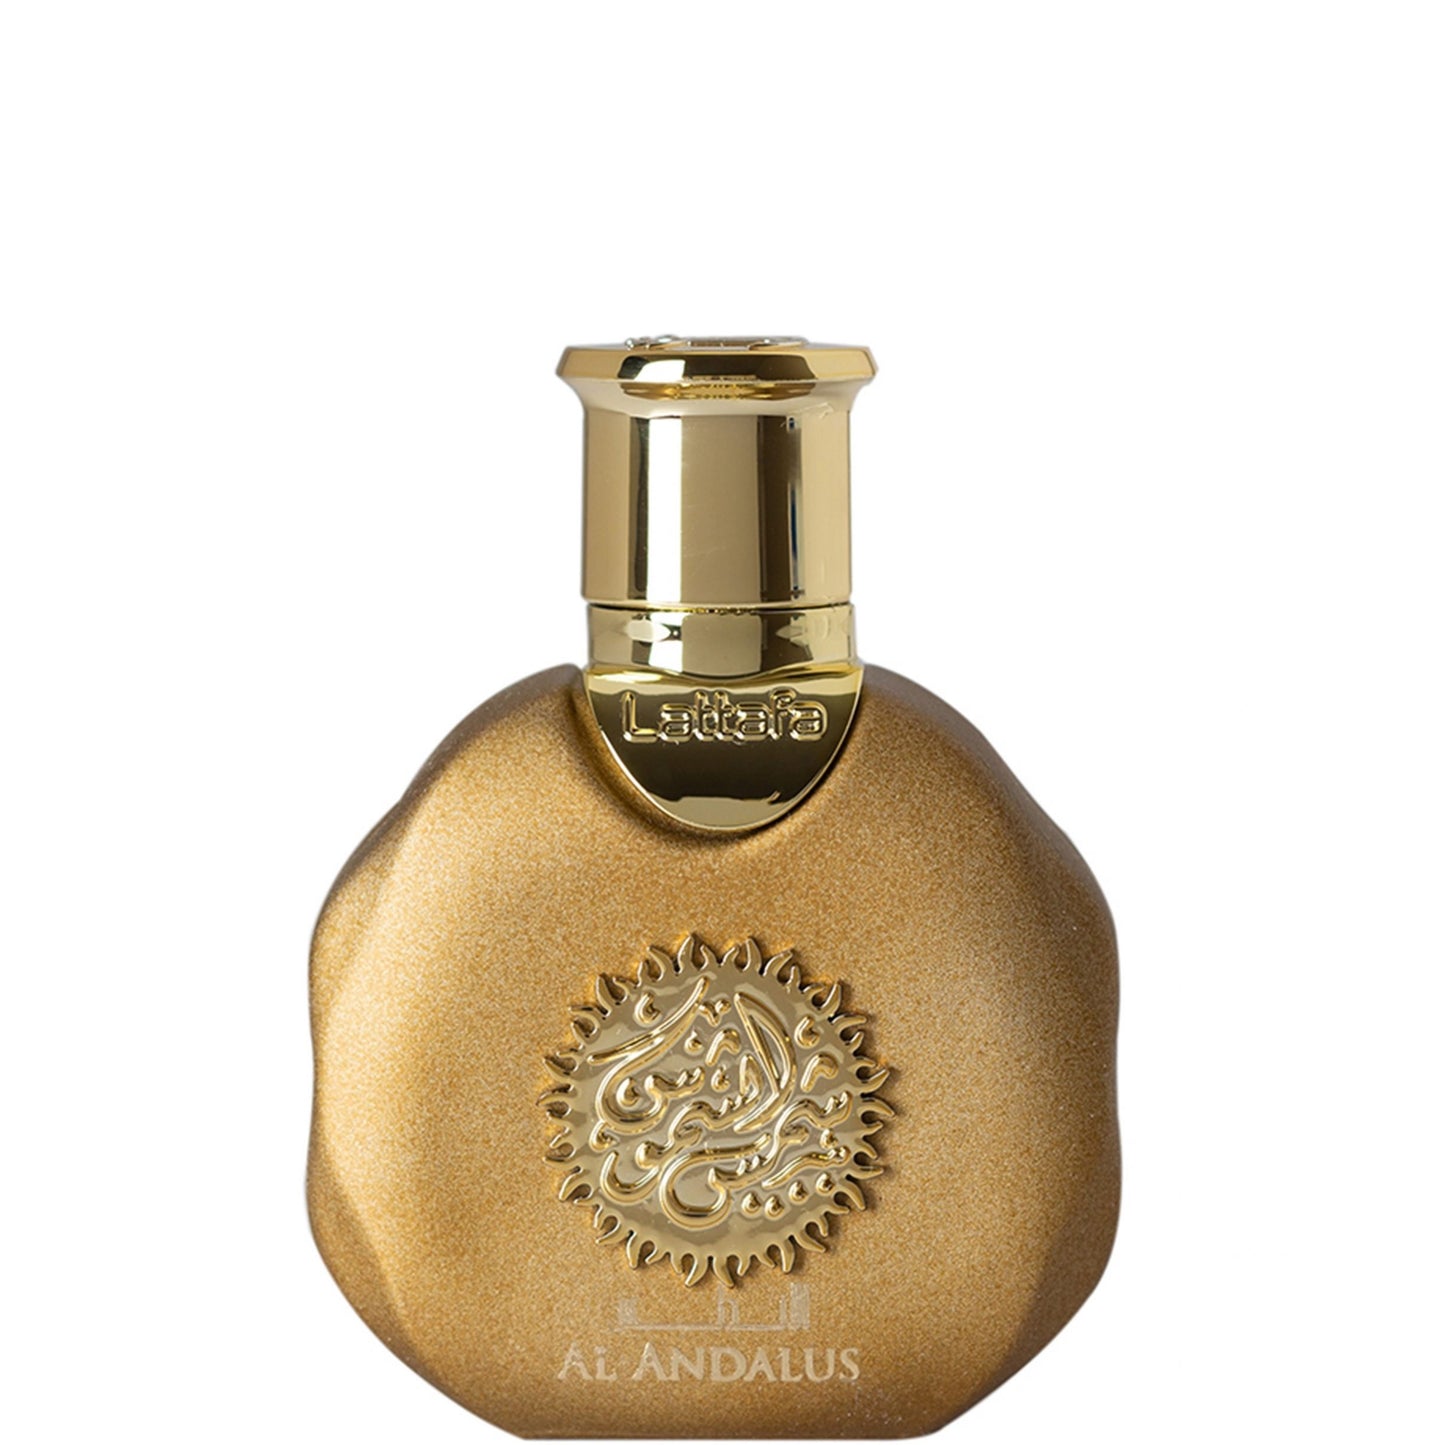 35 ml Woda Perfumowana Al Andalus, Zapach drzewnego tytoniu dla mężczyzn